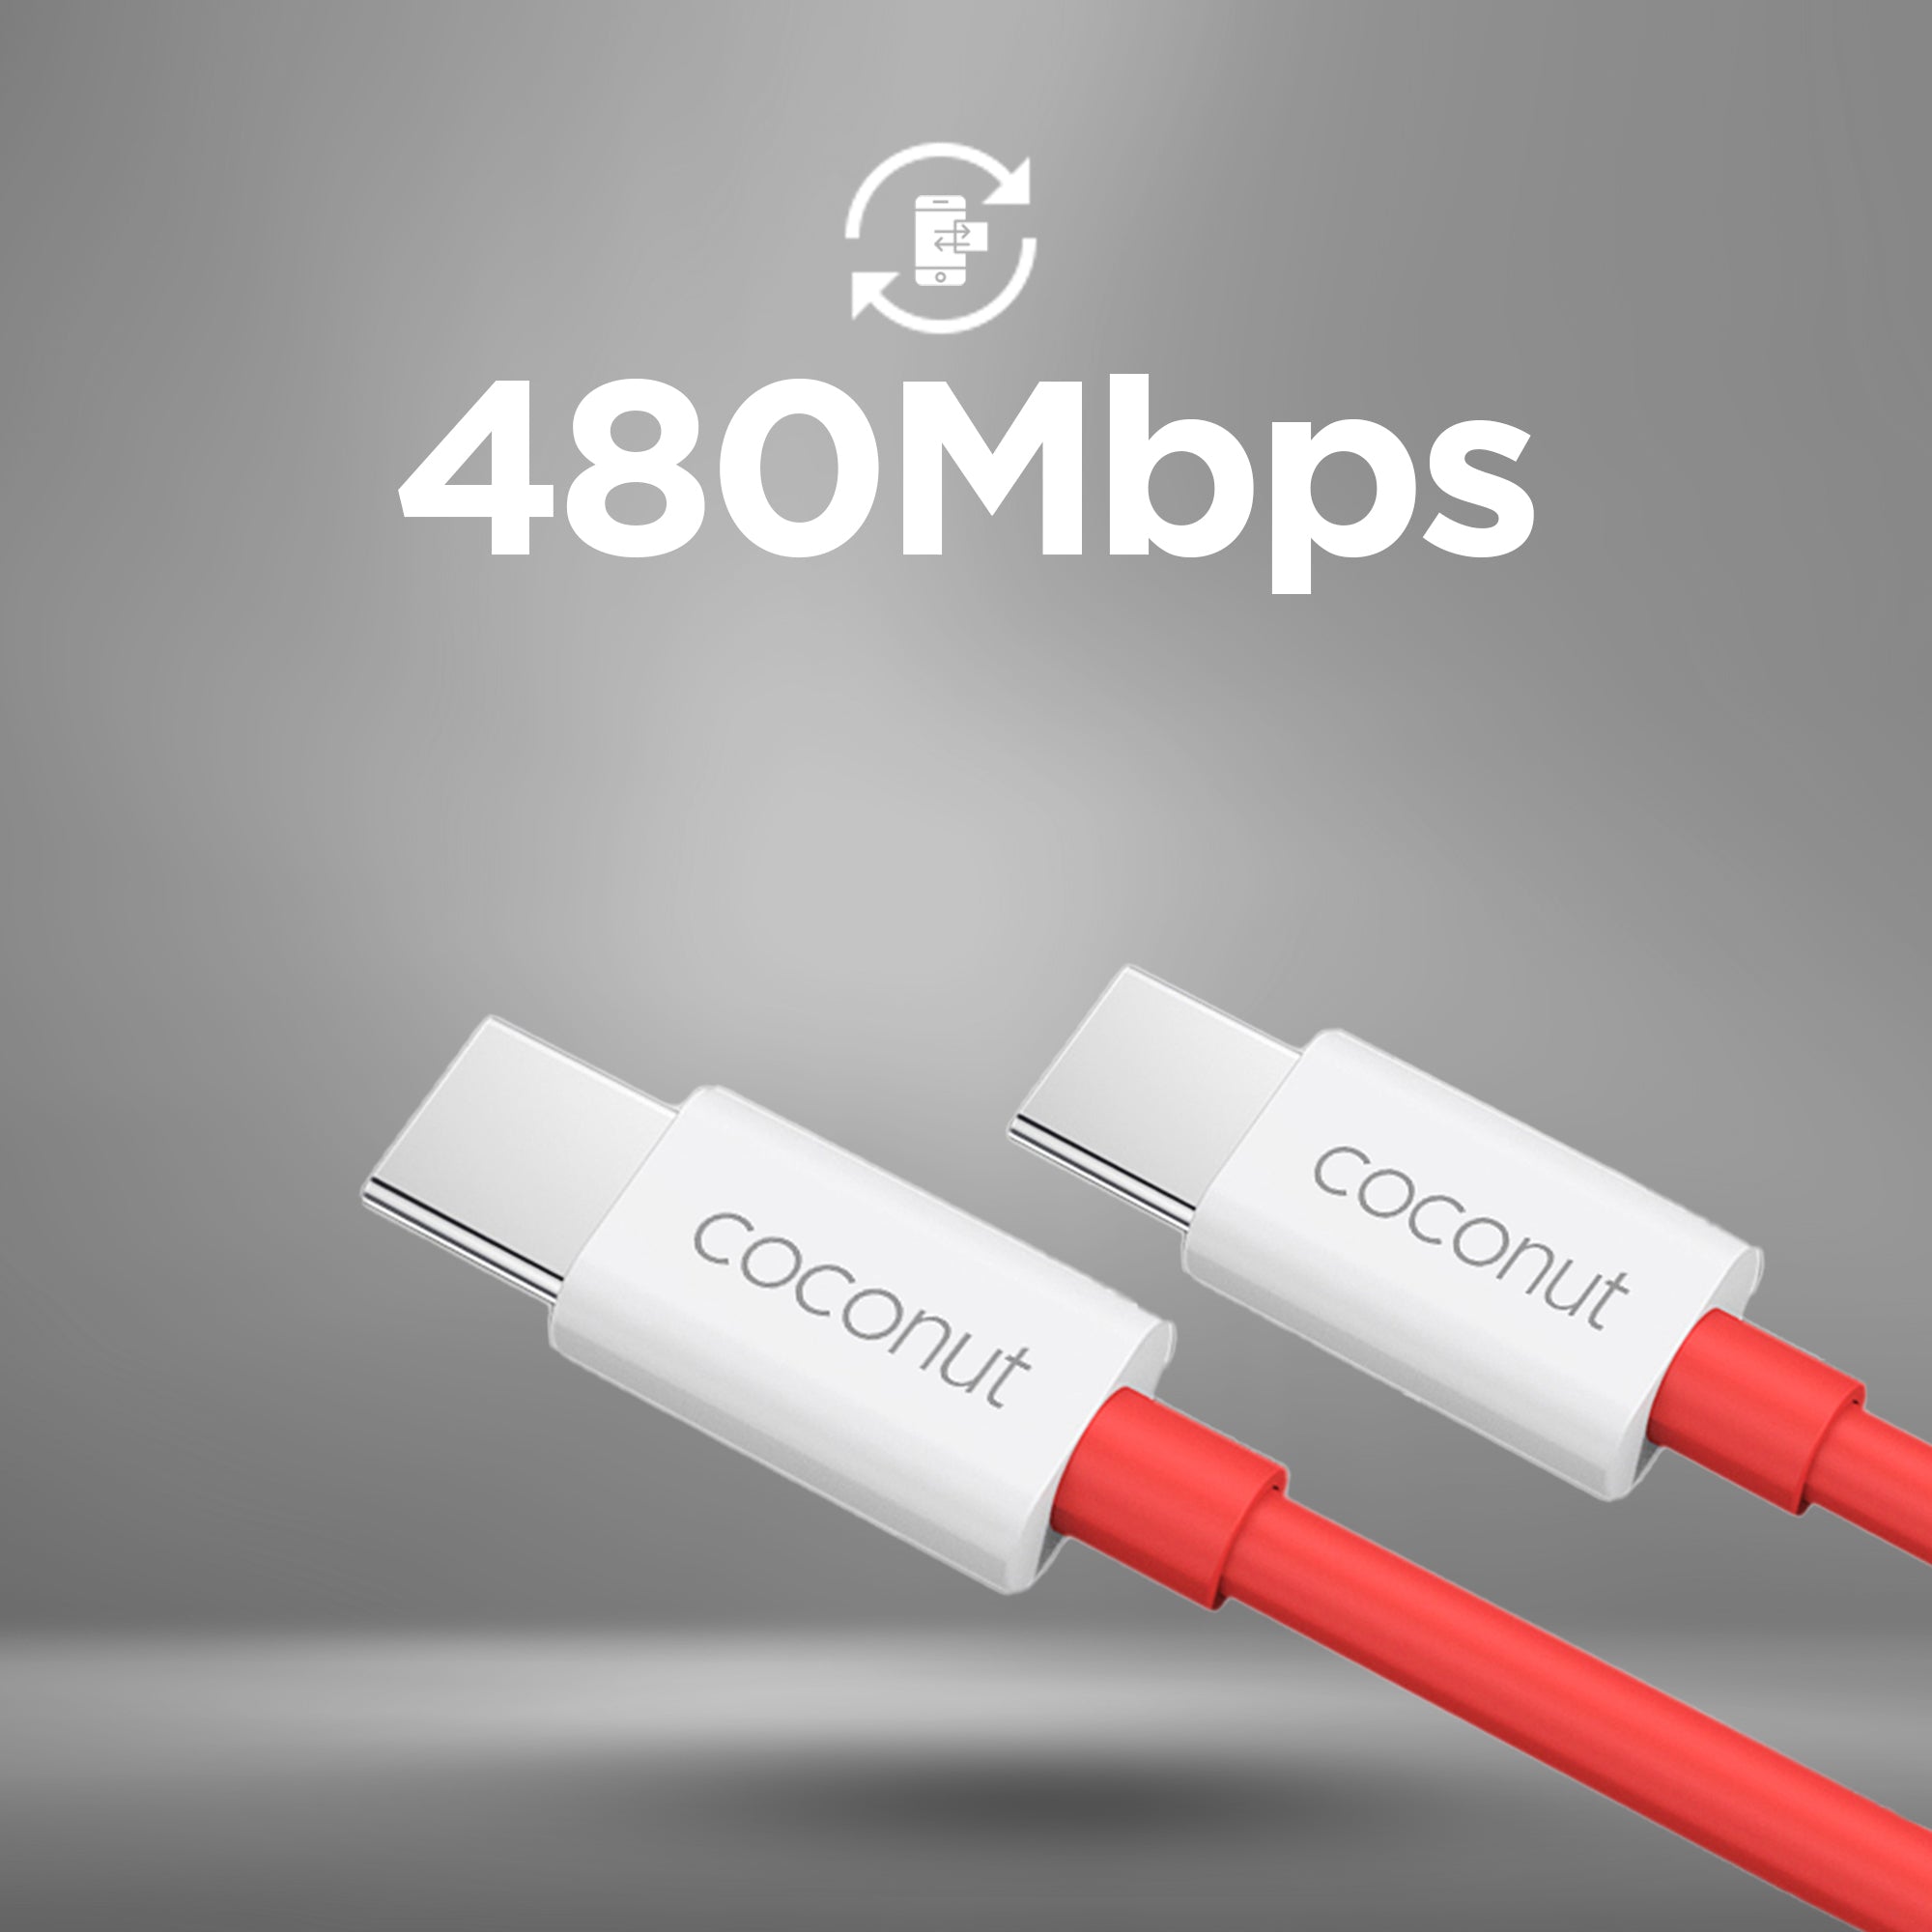 C15 Dash/Warp - USB C to Type C Cable - 1M